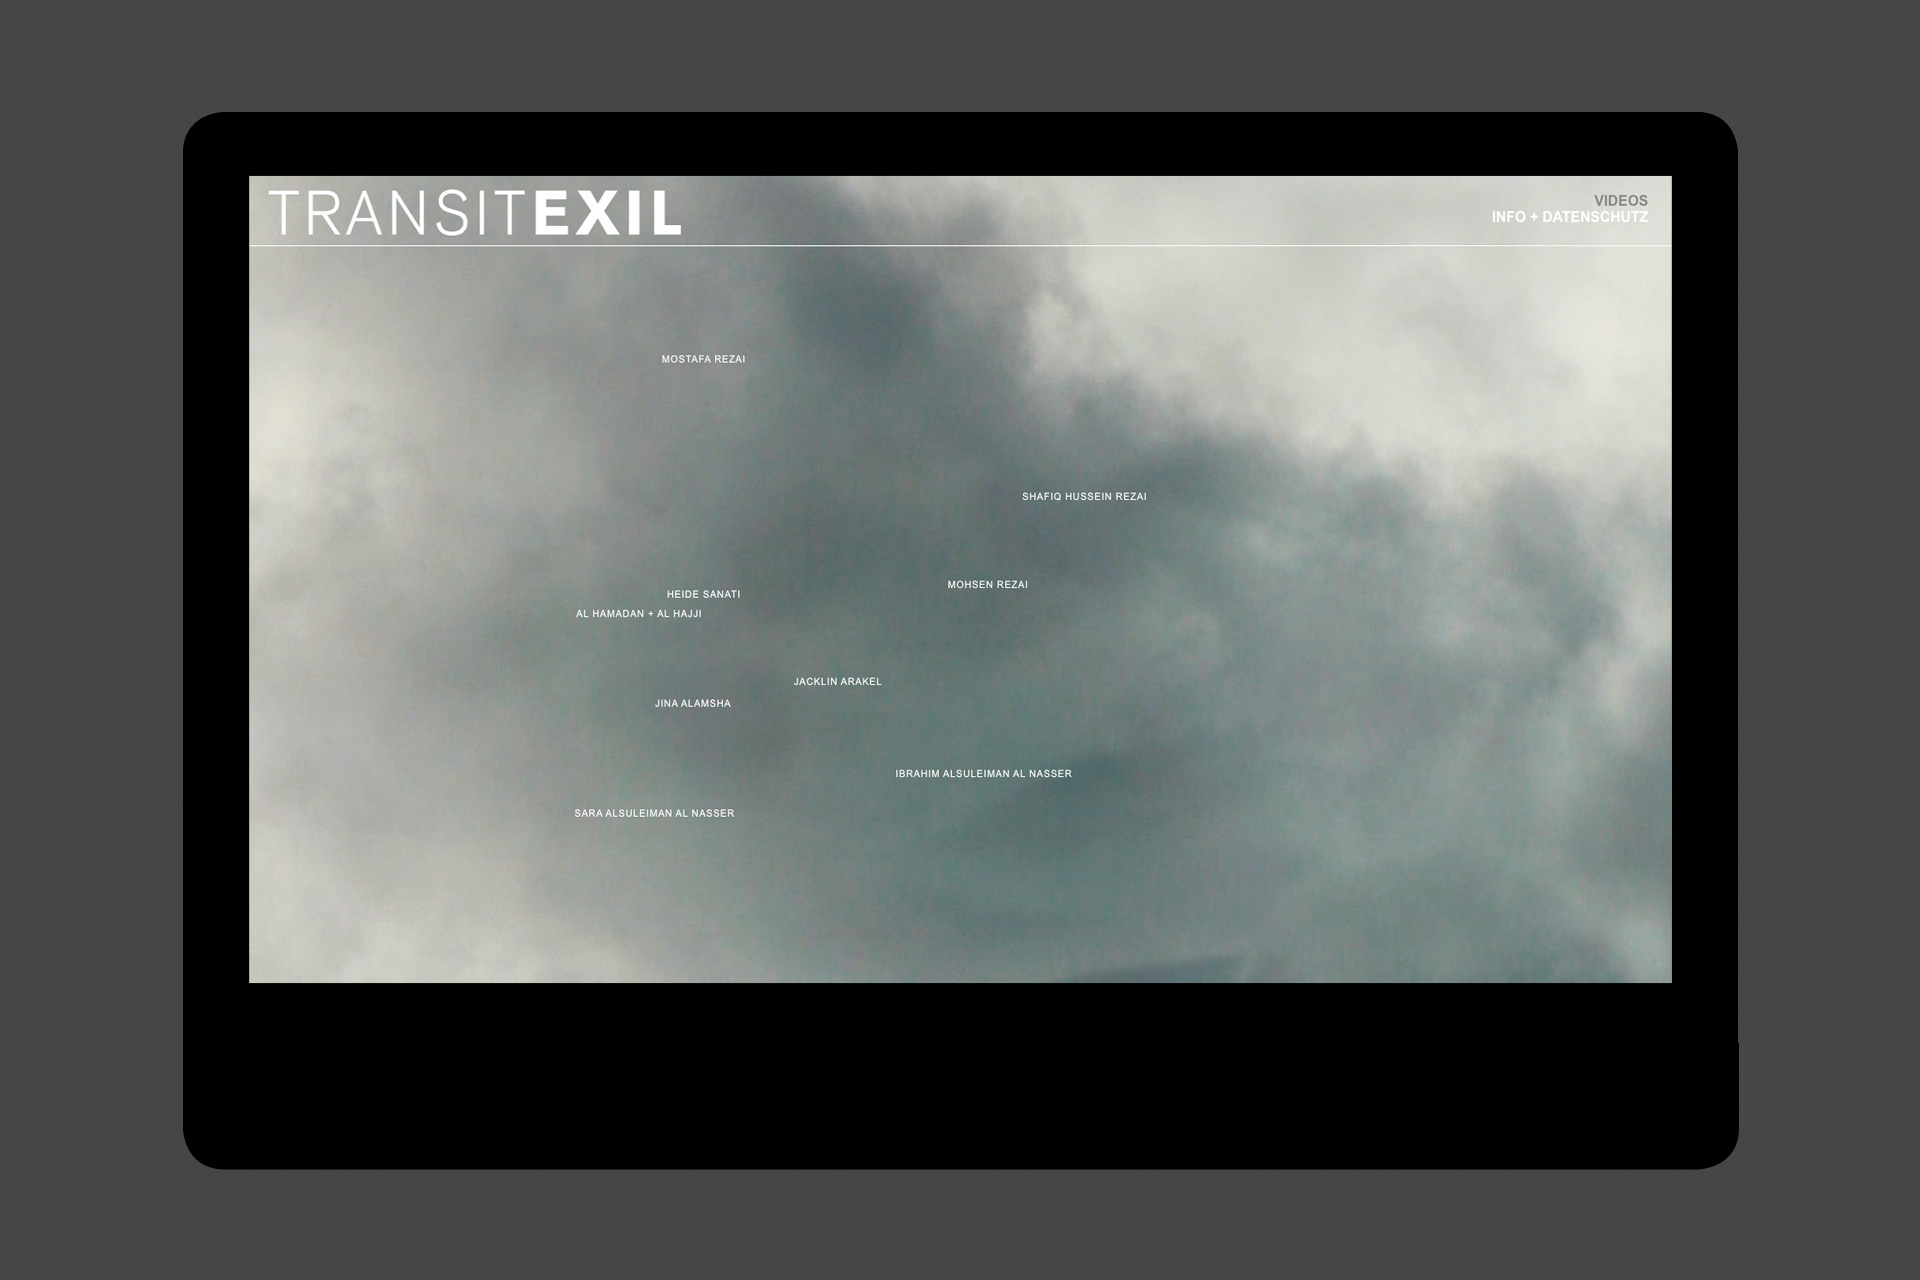 Startseite der Website Transit Exil Immigration. Auf bewegtem Himmel schweben die Namen der Interviewpartner:innen